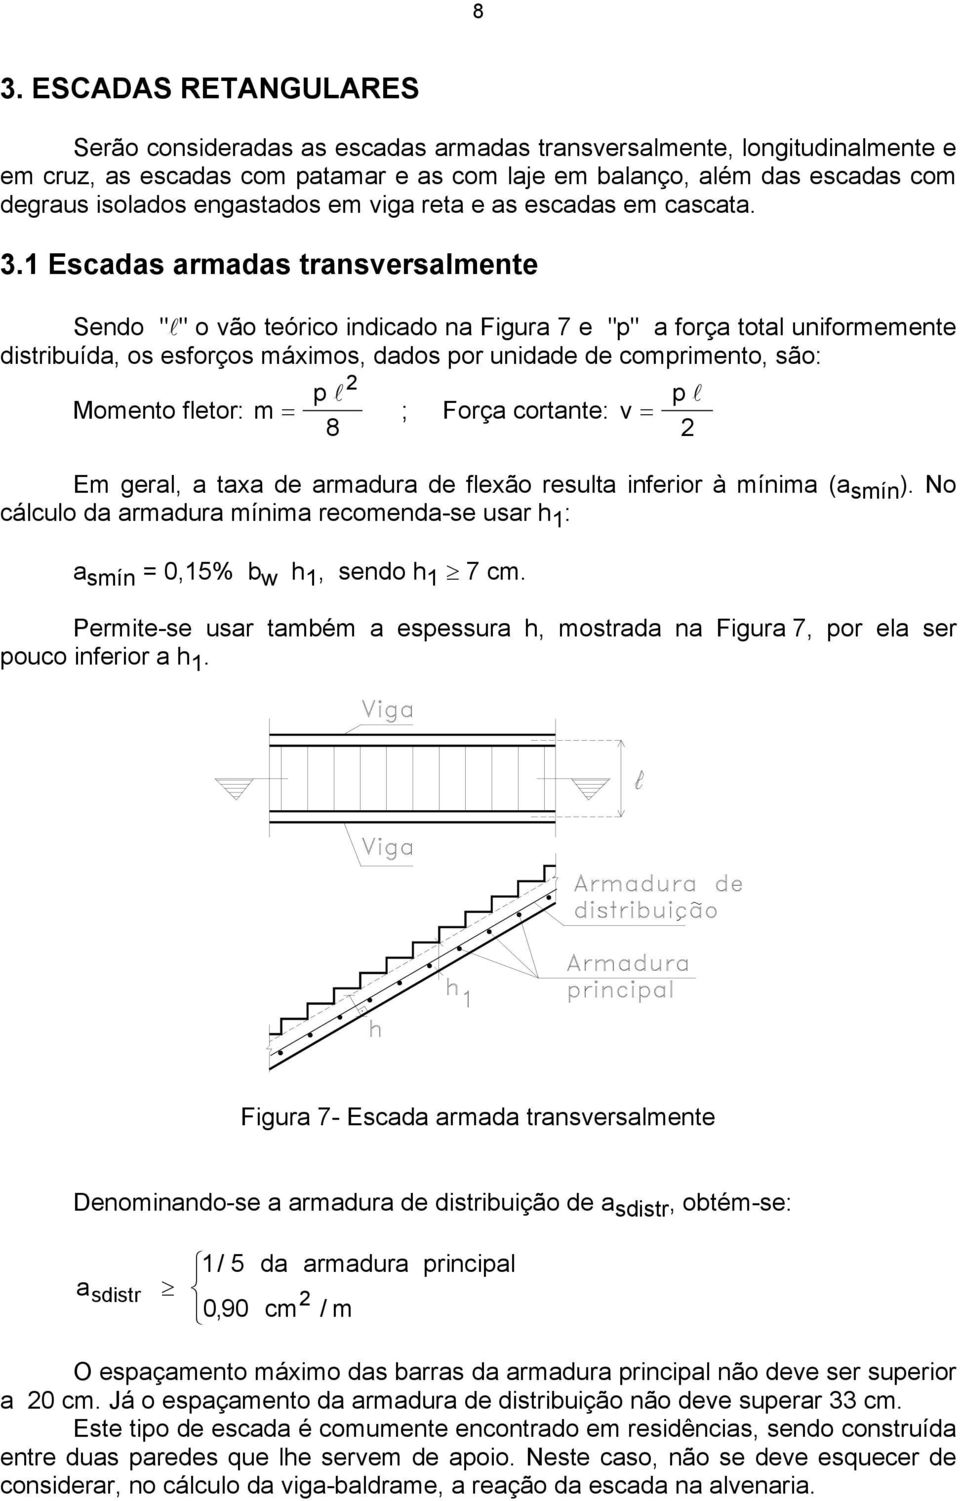 1 Escadas armadas transversalmente Sendo "l" o vão teórico indicado na Figura 7 e "p" a força total uniformemente distribuída, os esforços máximos, dados por unidade de comprimento, são: Momento